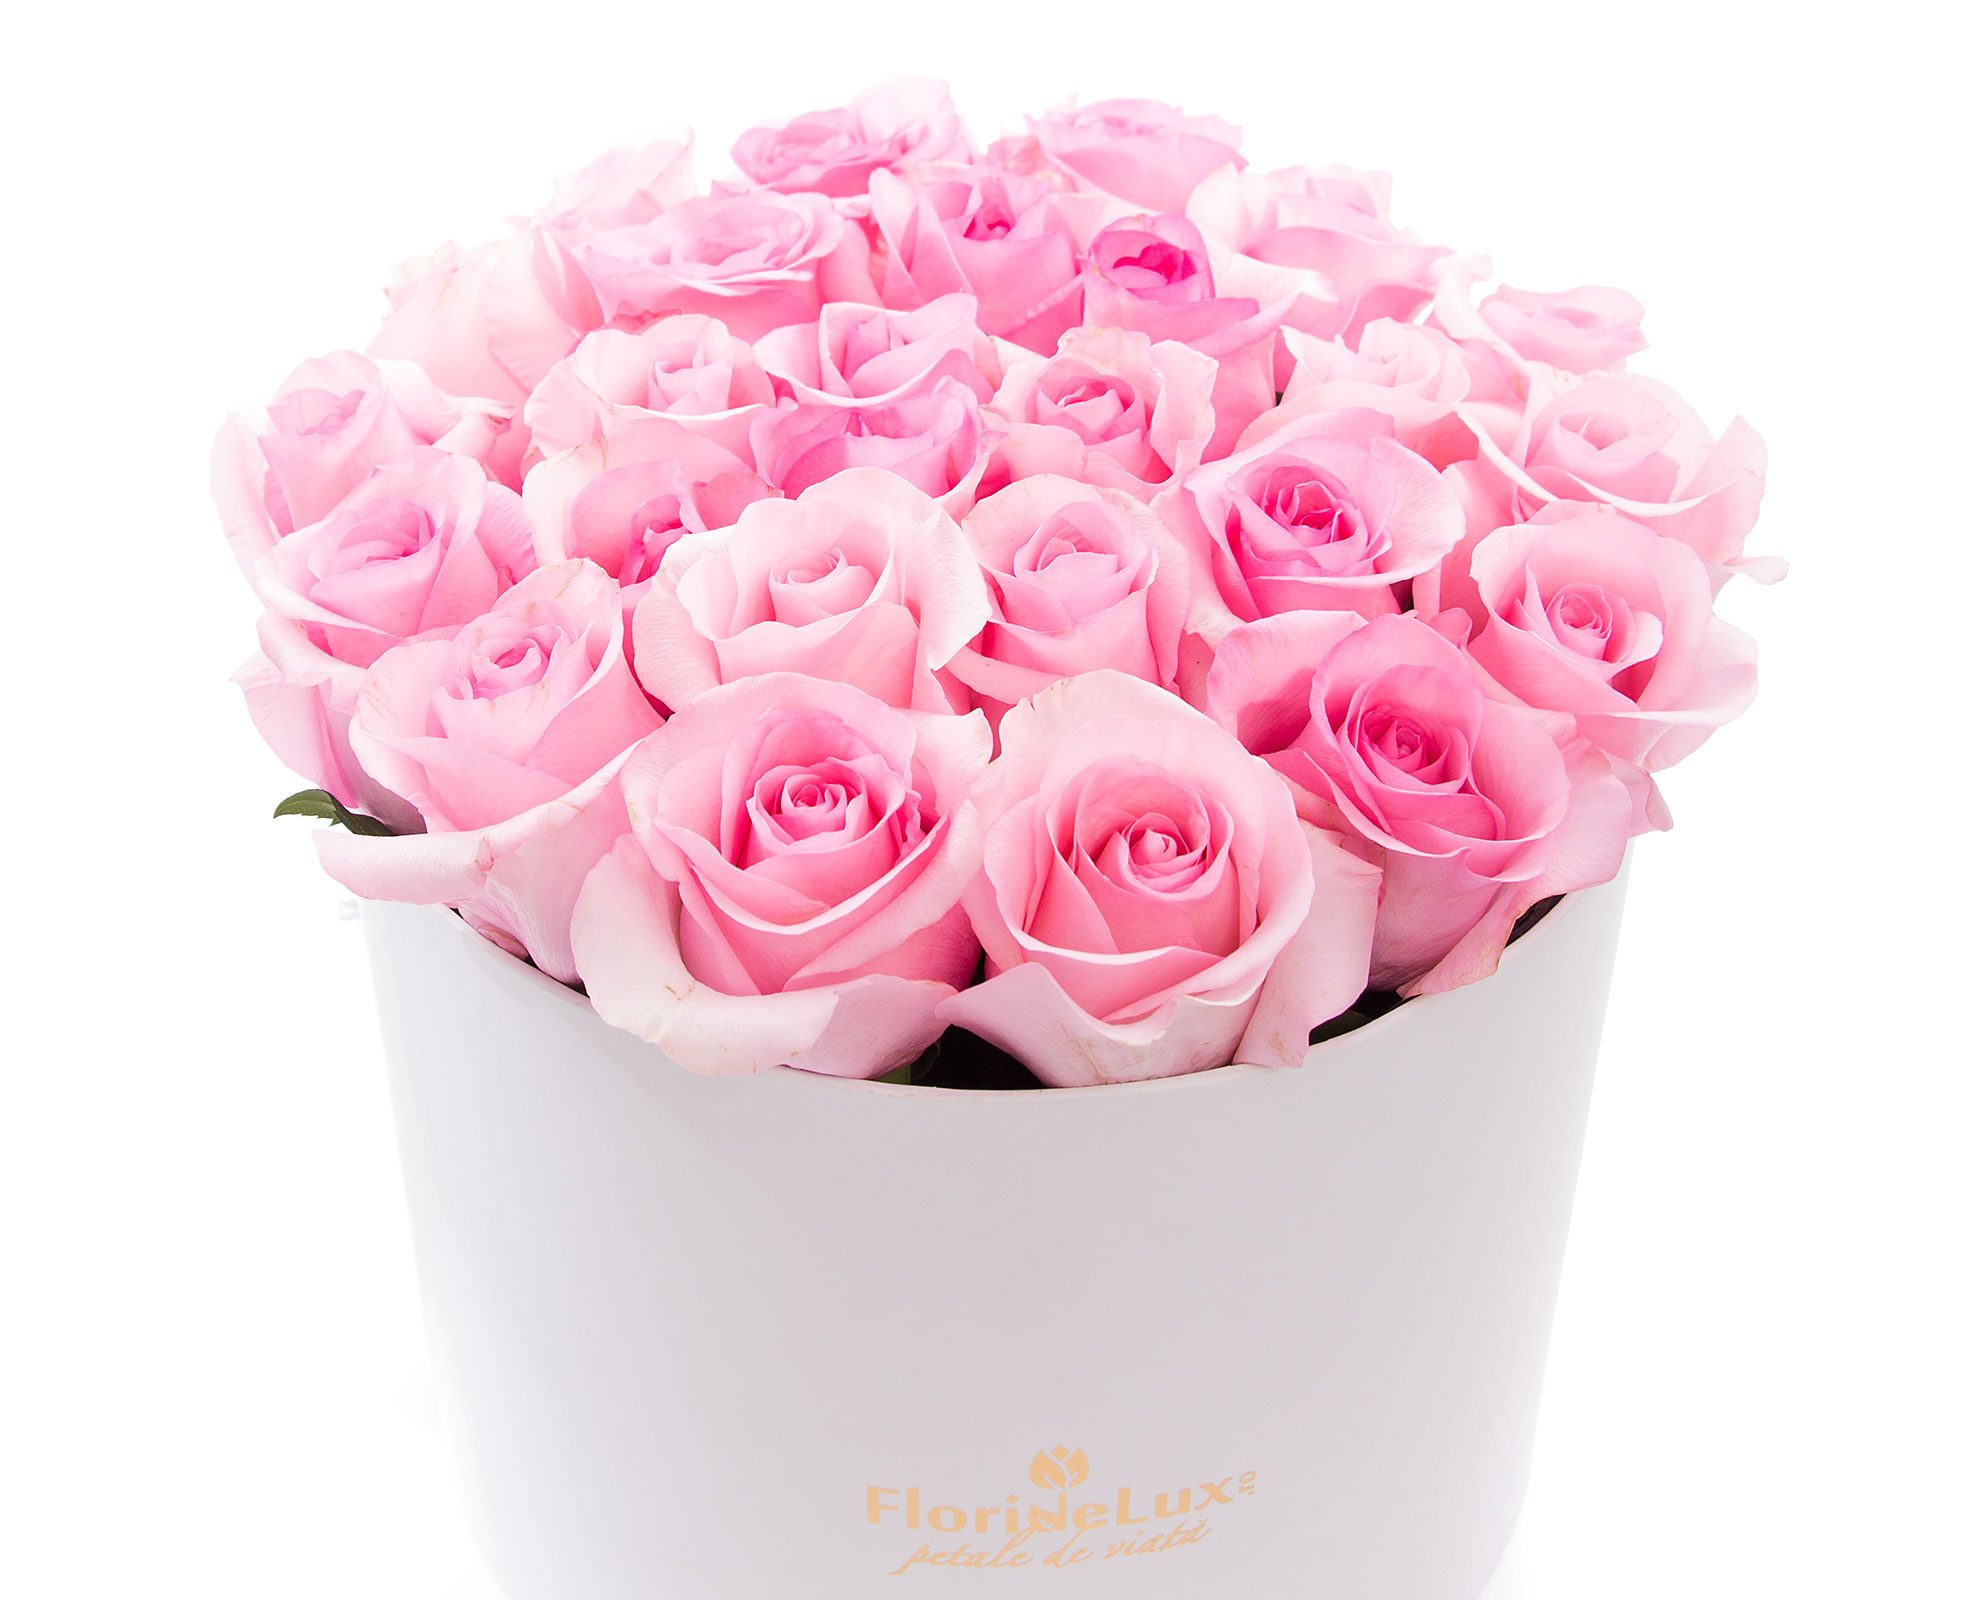 Cutie delicata trandafiri roz pal si vin Tralca